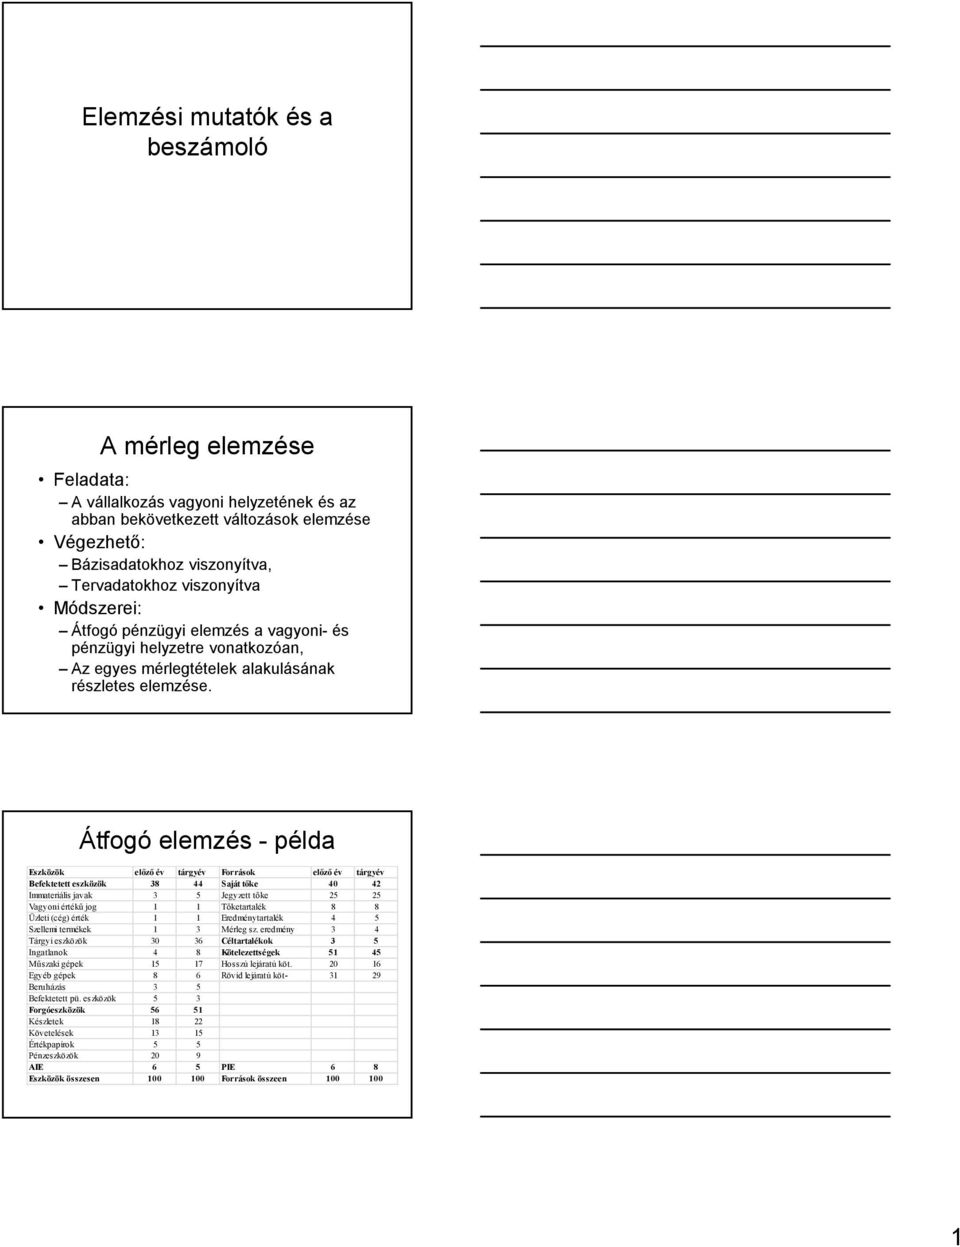 Elemzési mutatók és a beszámoló. A mérleg elemzése. Átfogó elemzés - példa  - PDF Free Download